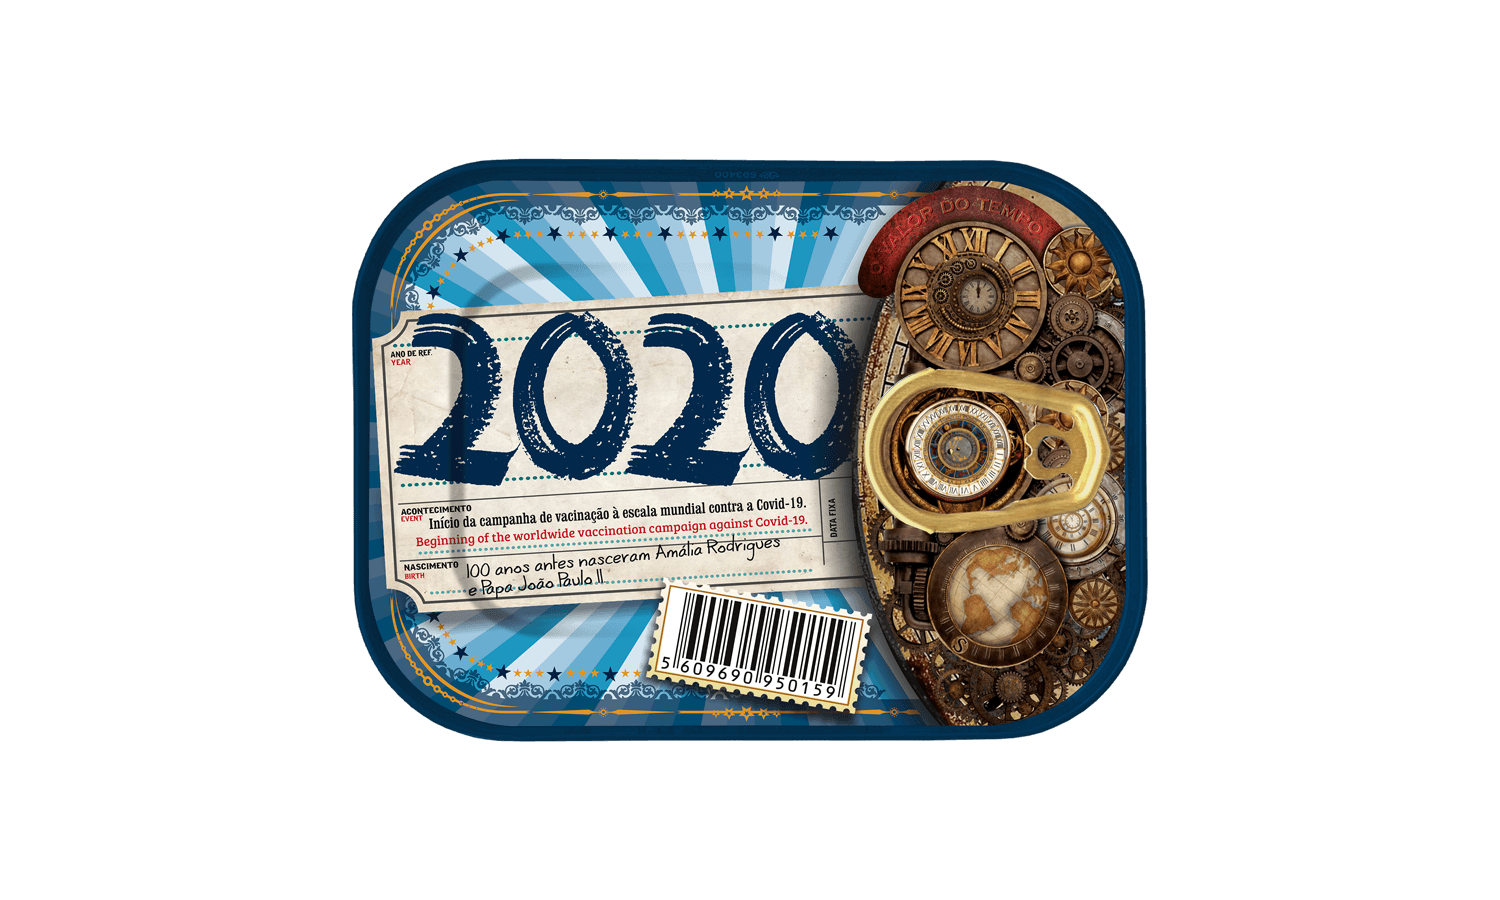 Timeless Sardines | 2020